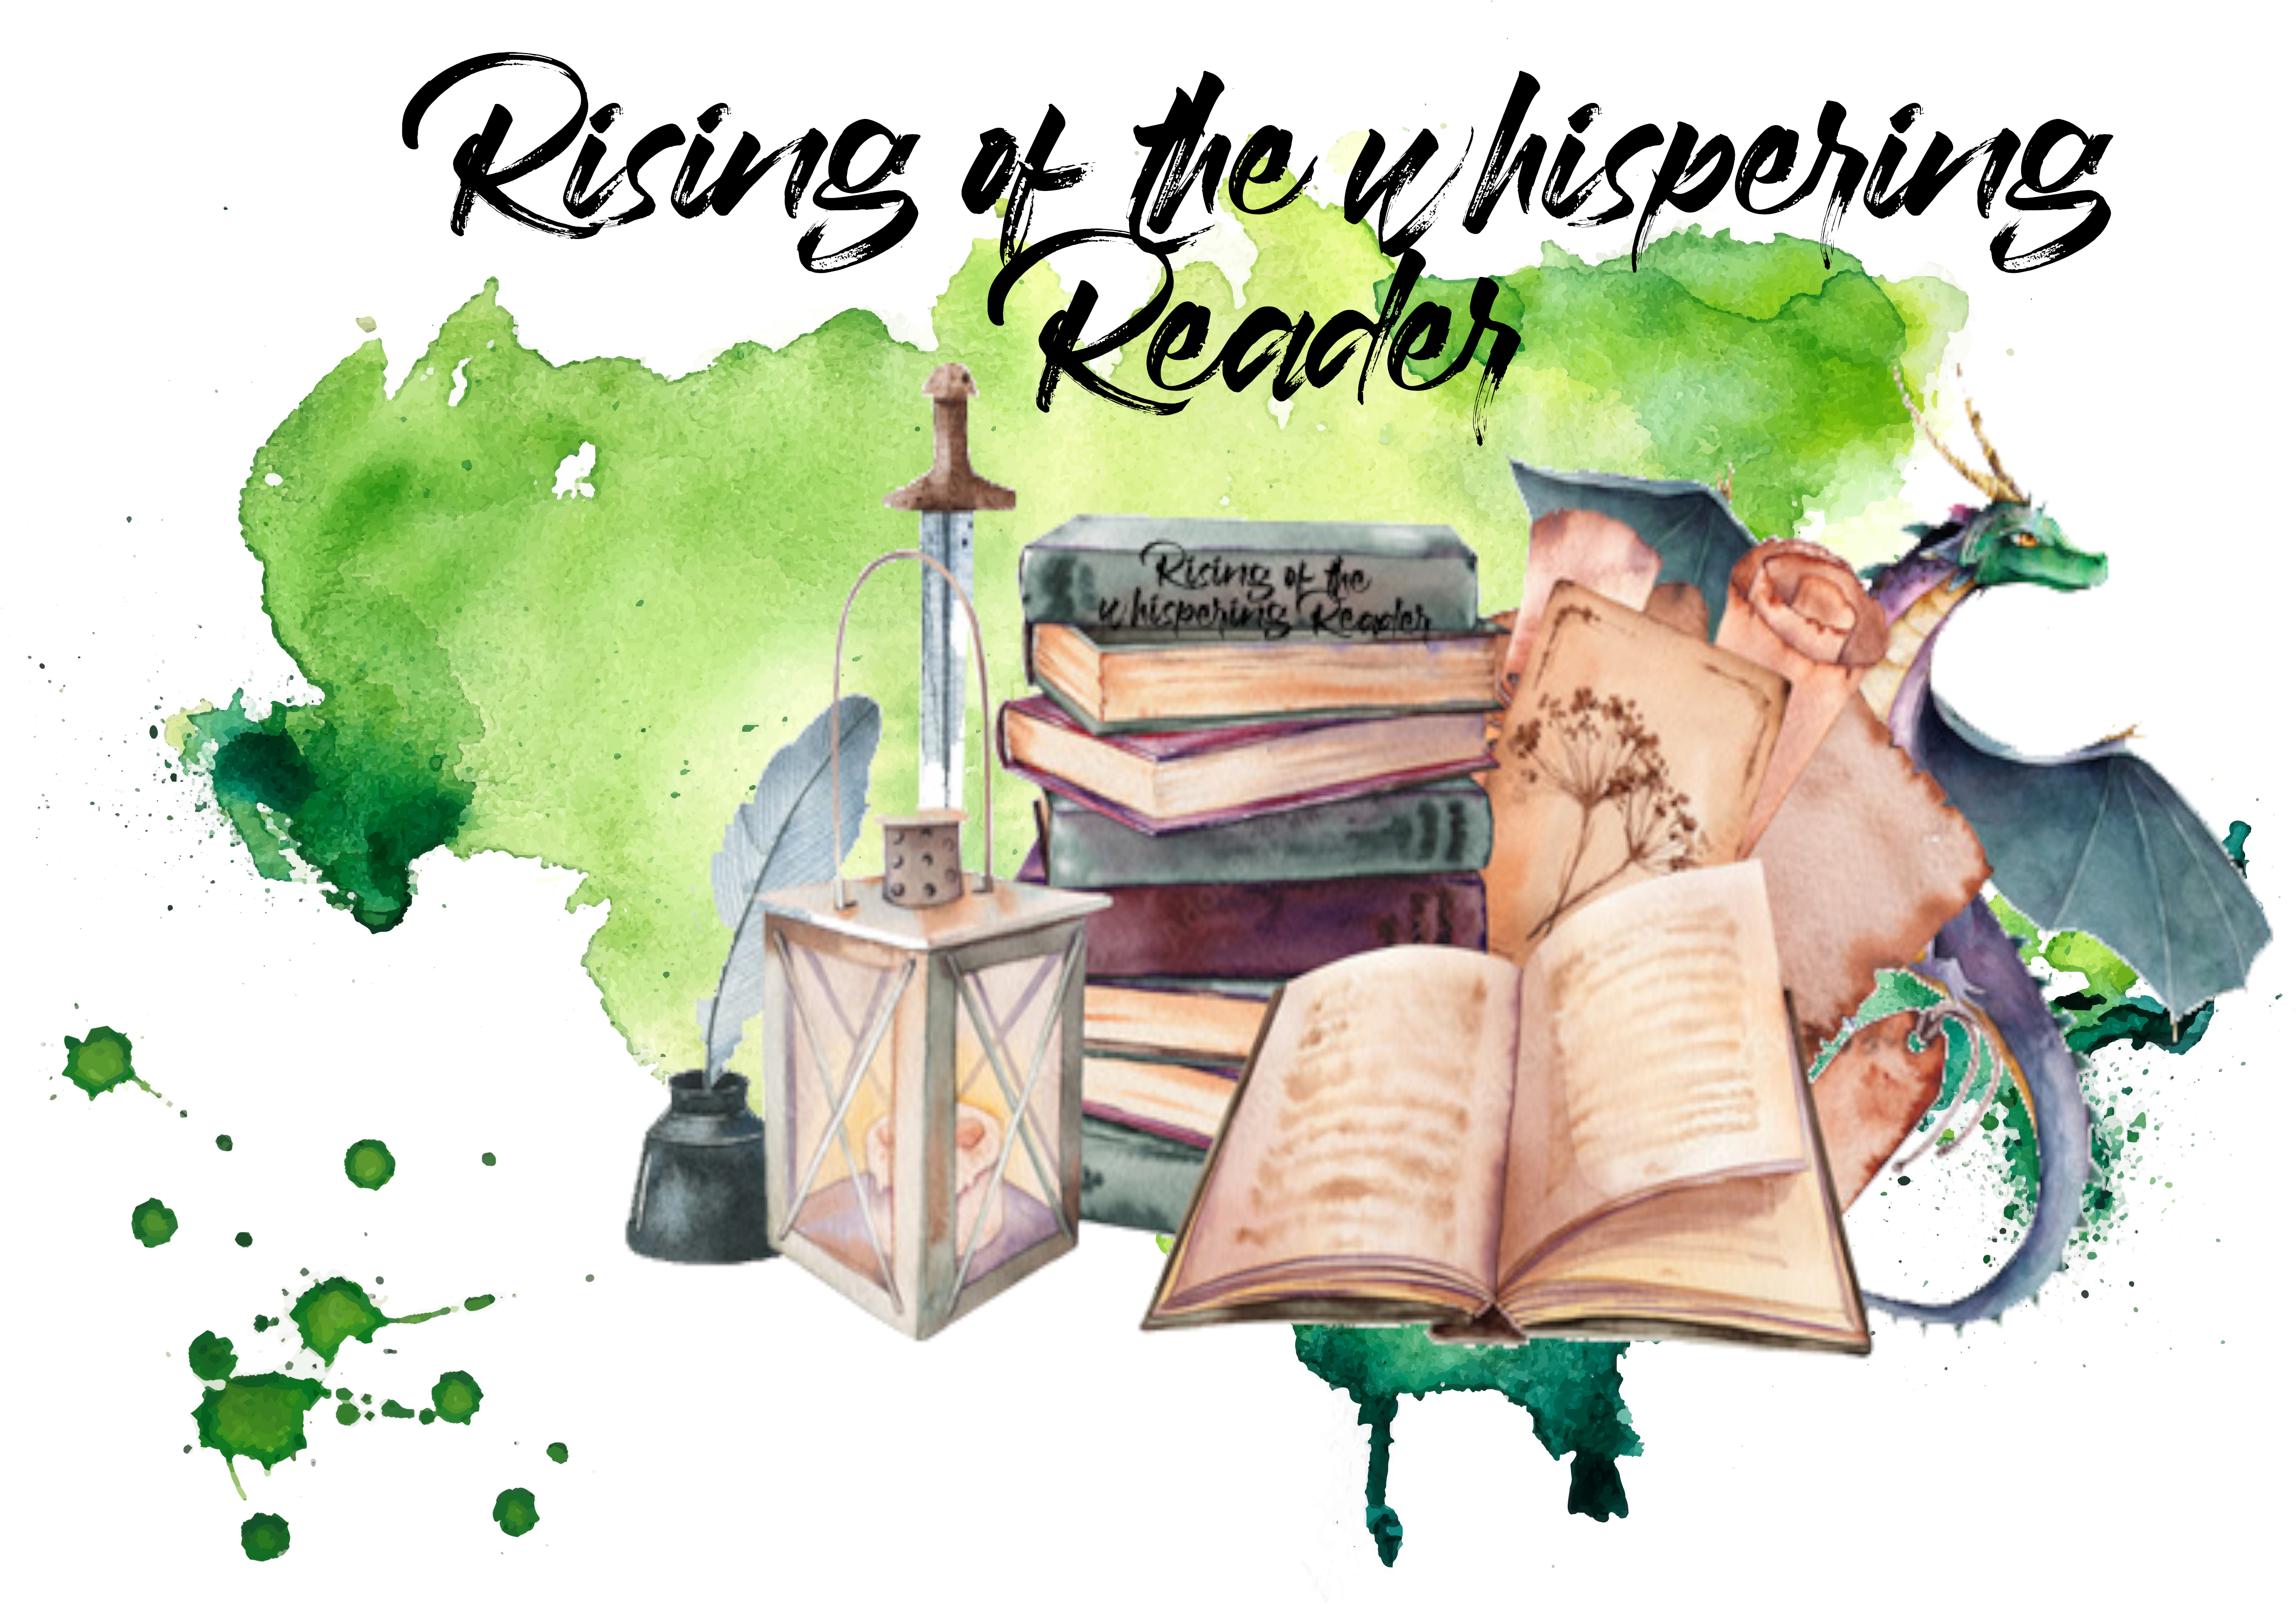 Rising of the whispering Reader – Aufgaben im Juli